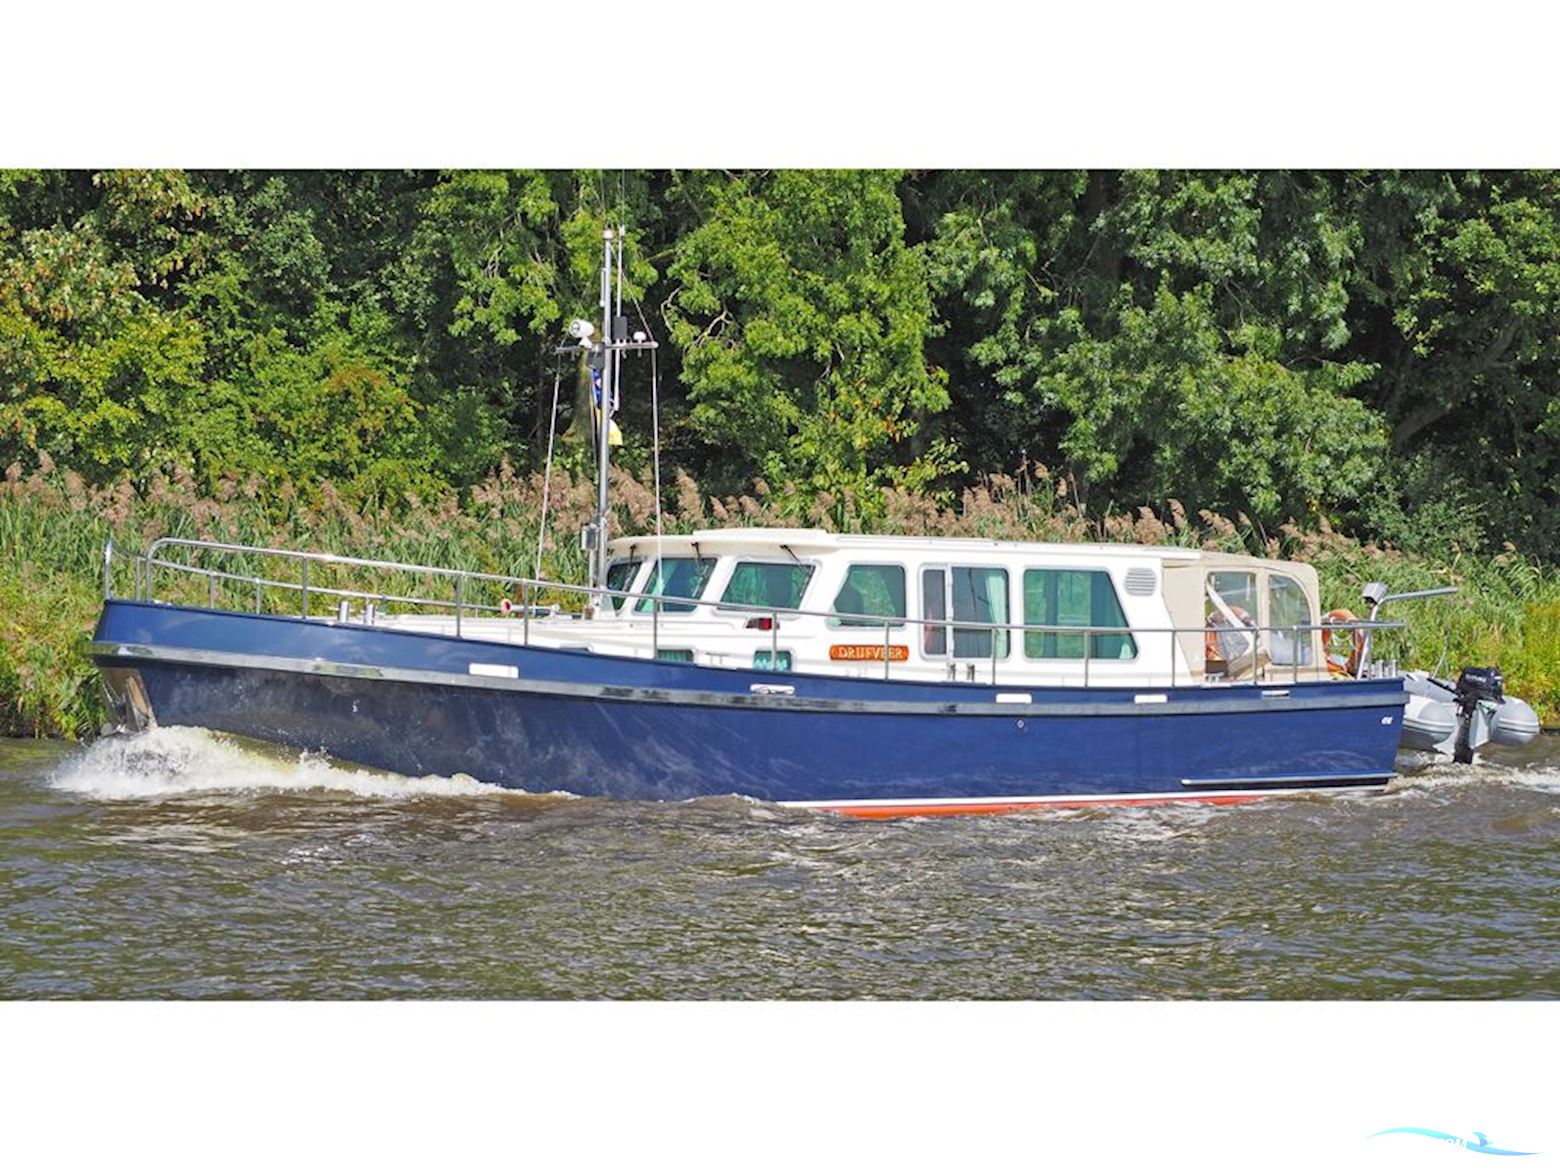 Rondspant Stevenvlet 45 VE Motor boat 2011, with Perkins Sabre M225 engine, The Netherlands